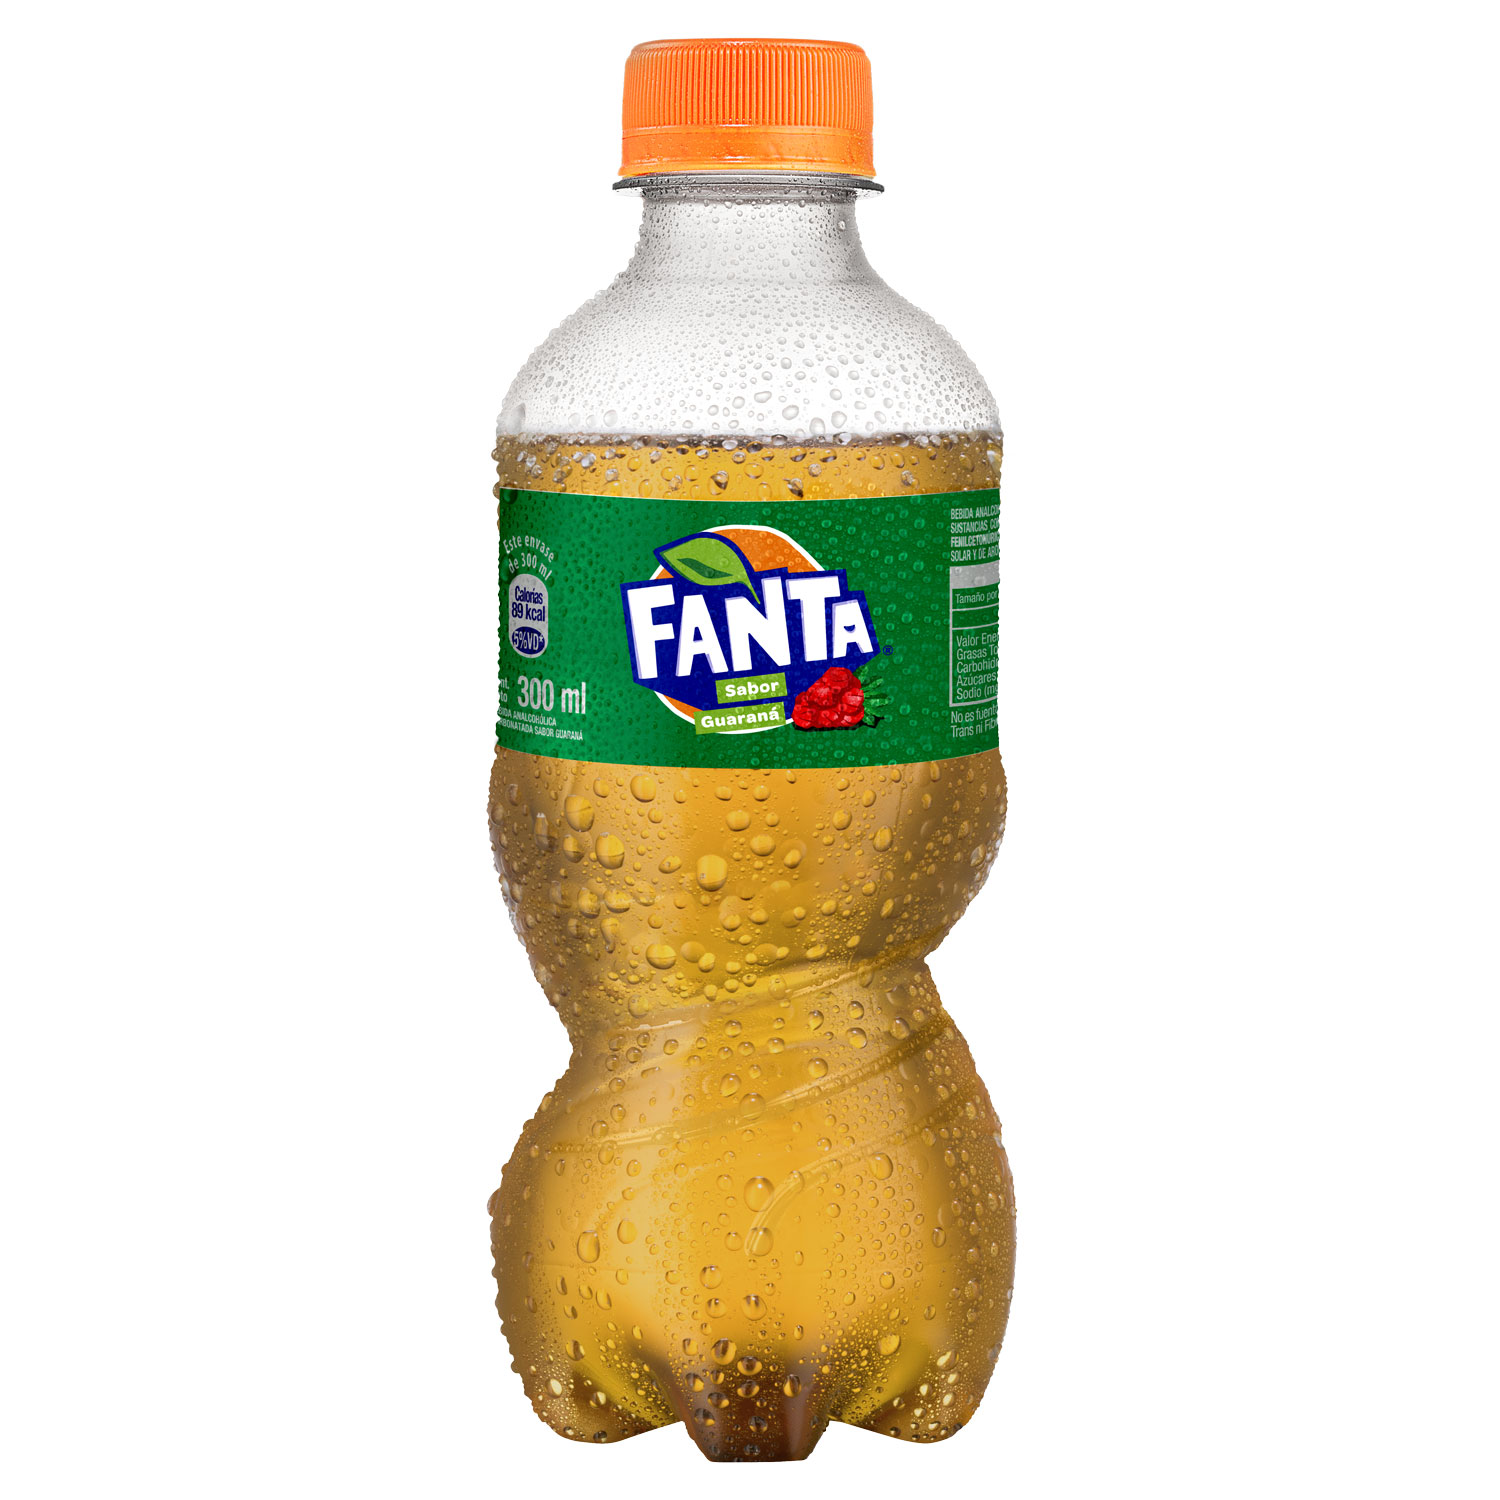 Botella de Fanta Guaraná 300mL